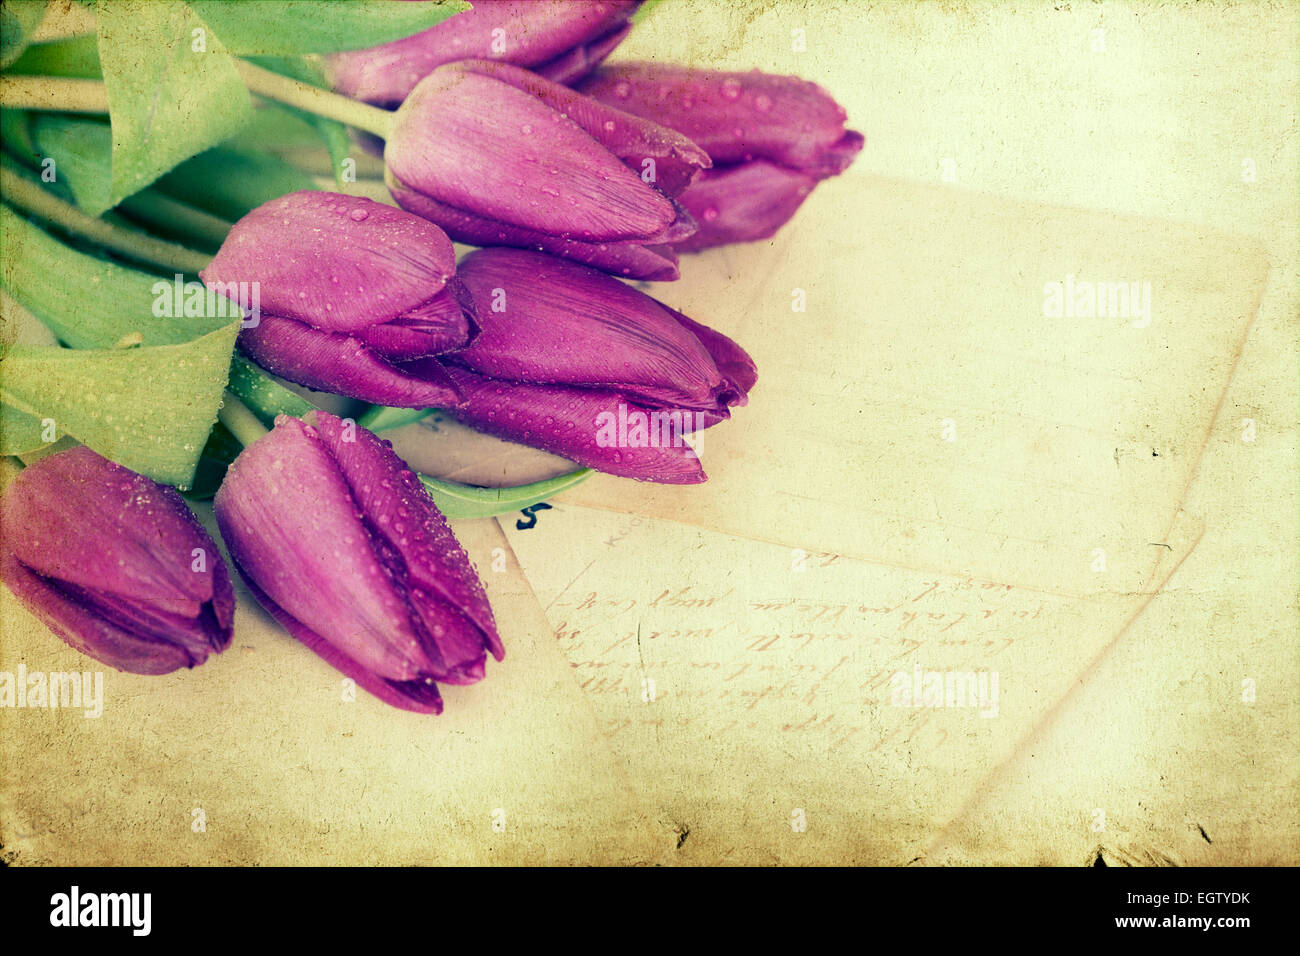 Viejas cartas de amor y tulipanes púrpura. Imagen de tonos de estilo retro Foto de stock